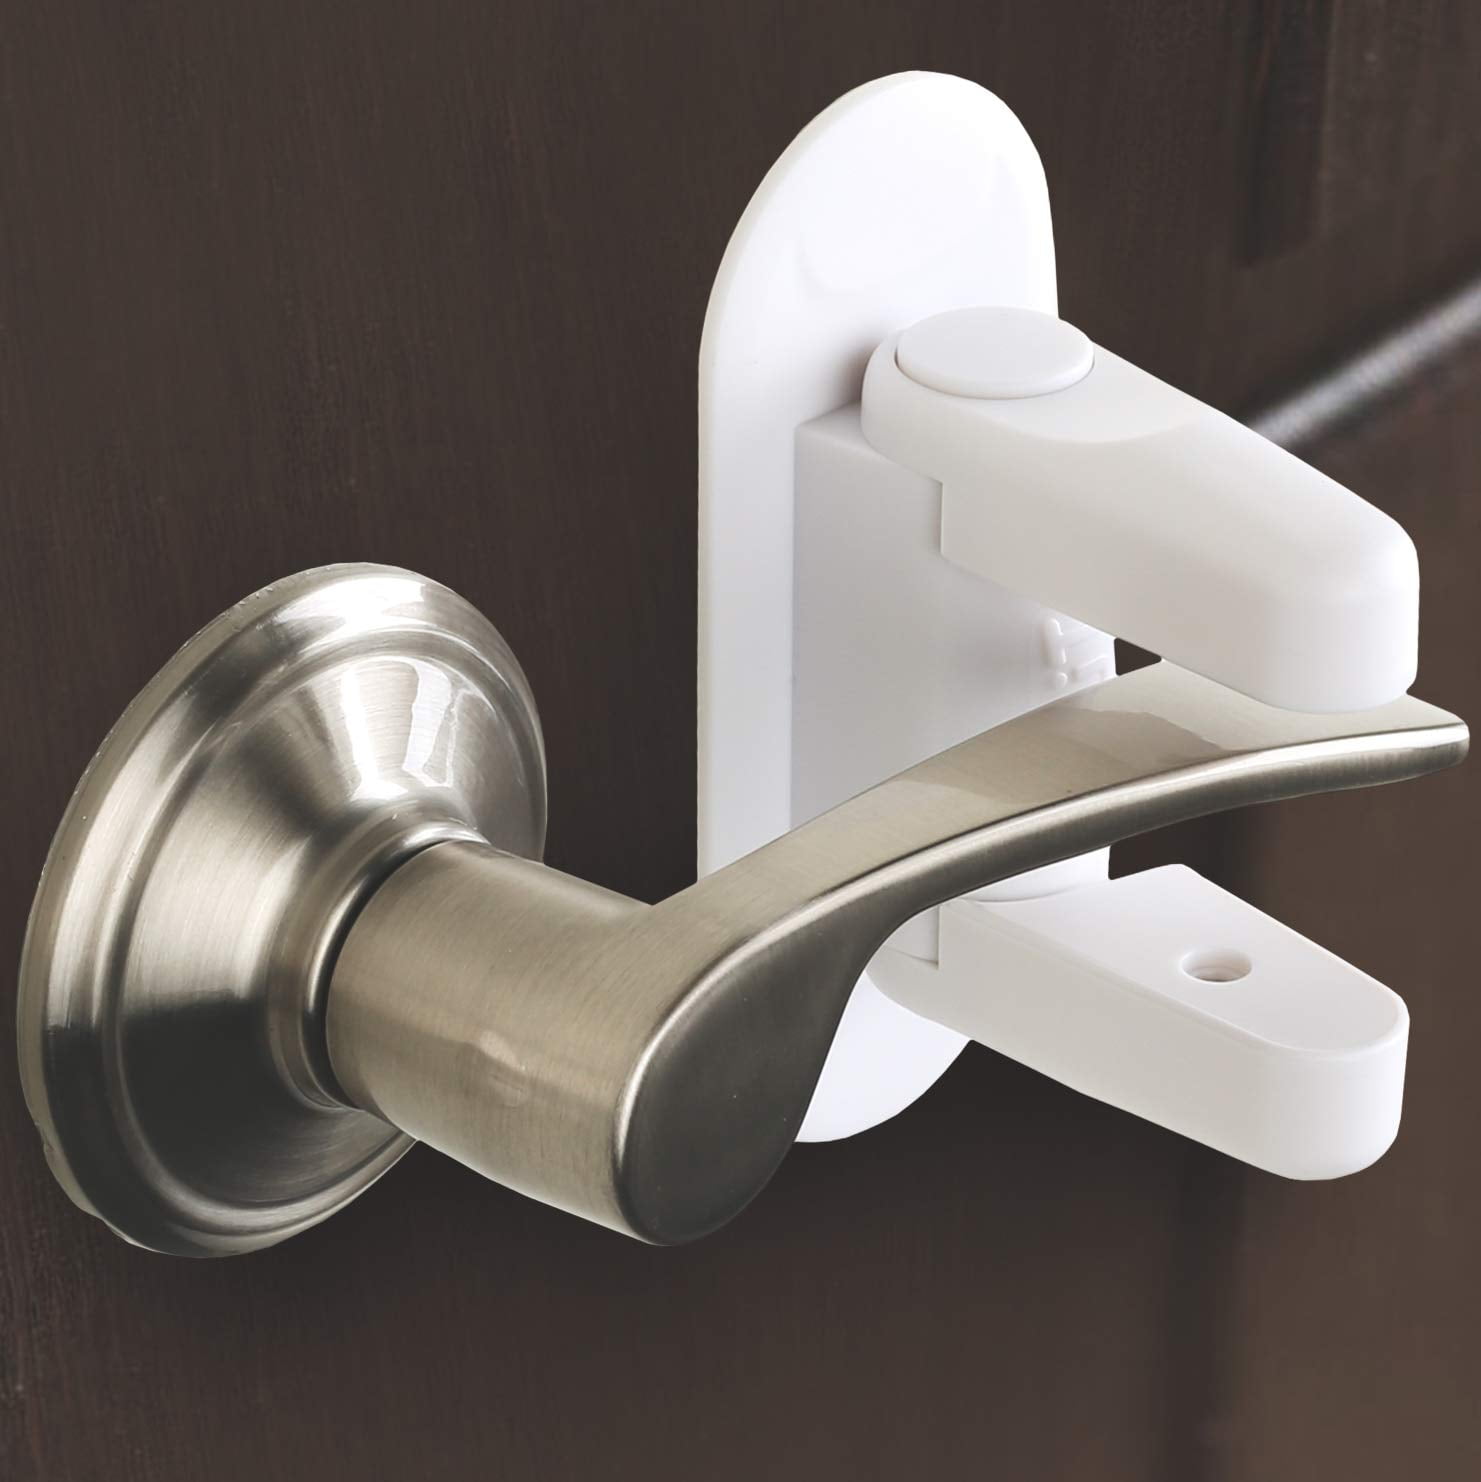 DOOR MONKEY Door Lock & Pinch Guard - Safety Door Lock For Kids - Baby  Proof Door Lock For Bedrooms, Bathrooms & Kitchens, Everything Else on  Carousell